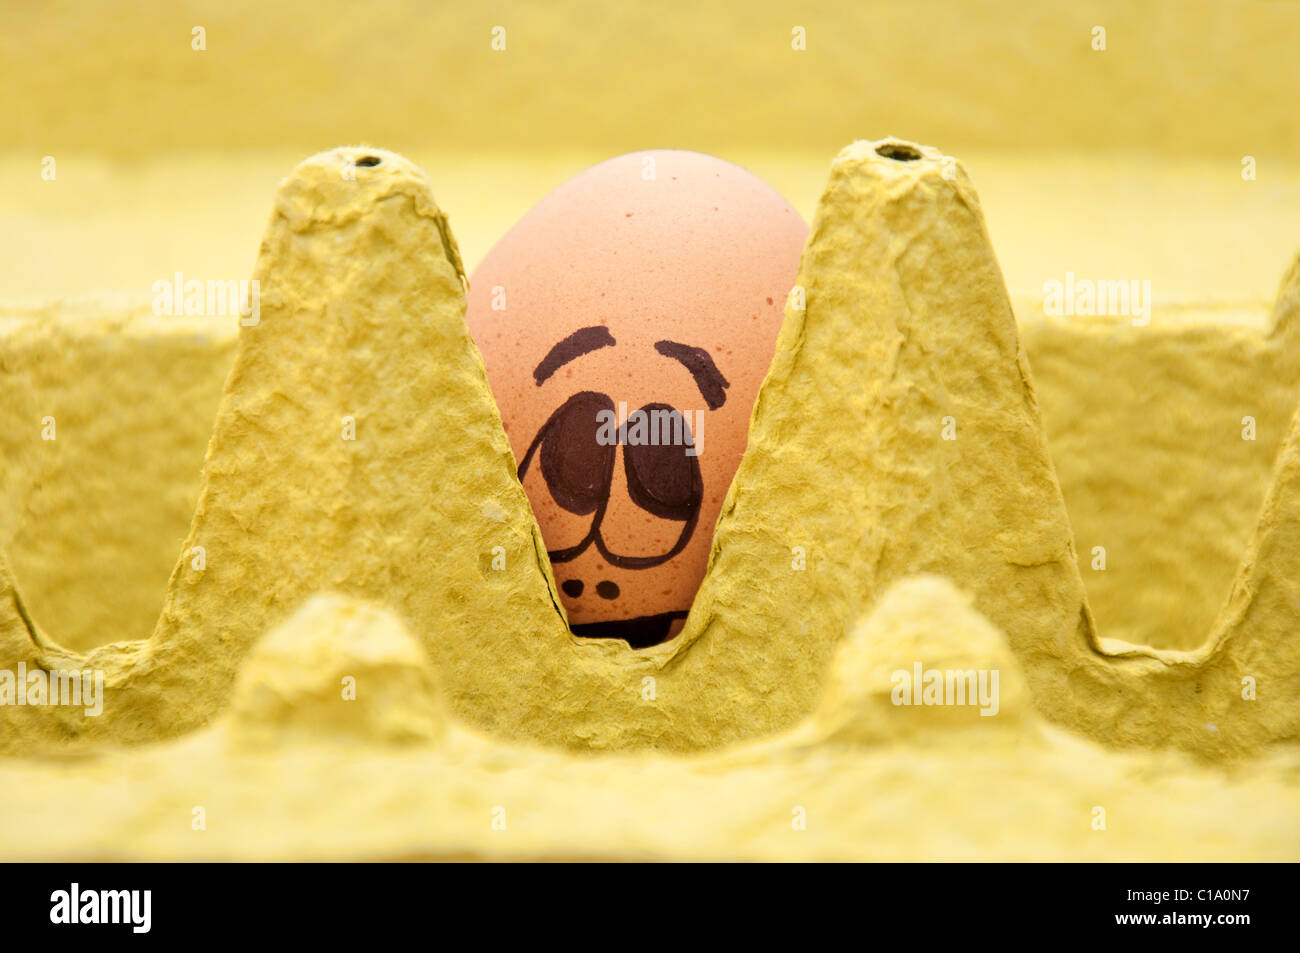 Gruppo di uova fresche con facce disegnate che raffigurano emozioni diverse disposte in un cartone confezione di uova contro il bianco. Foto Stock